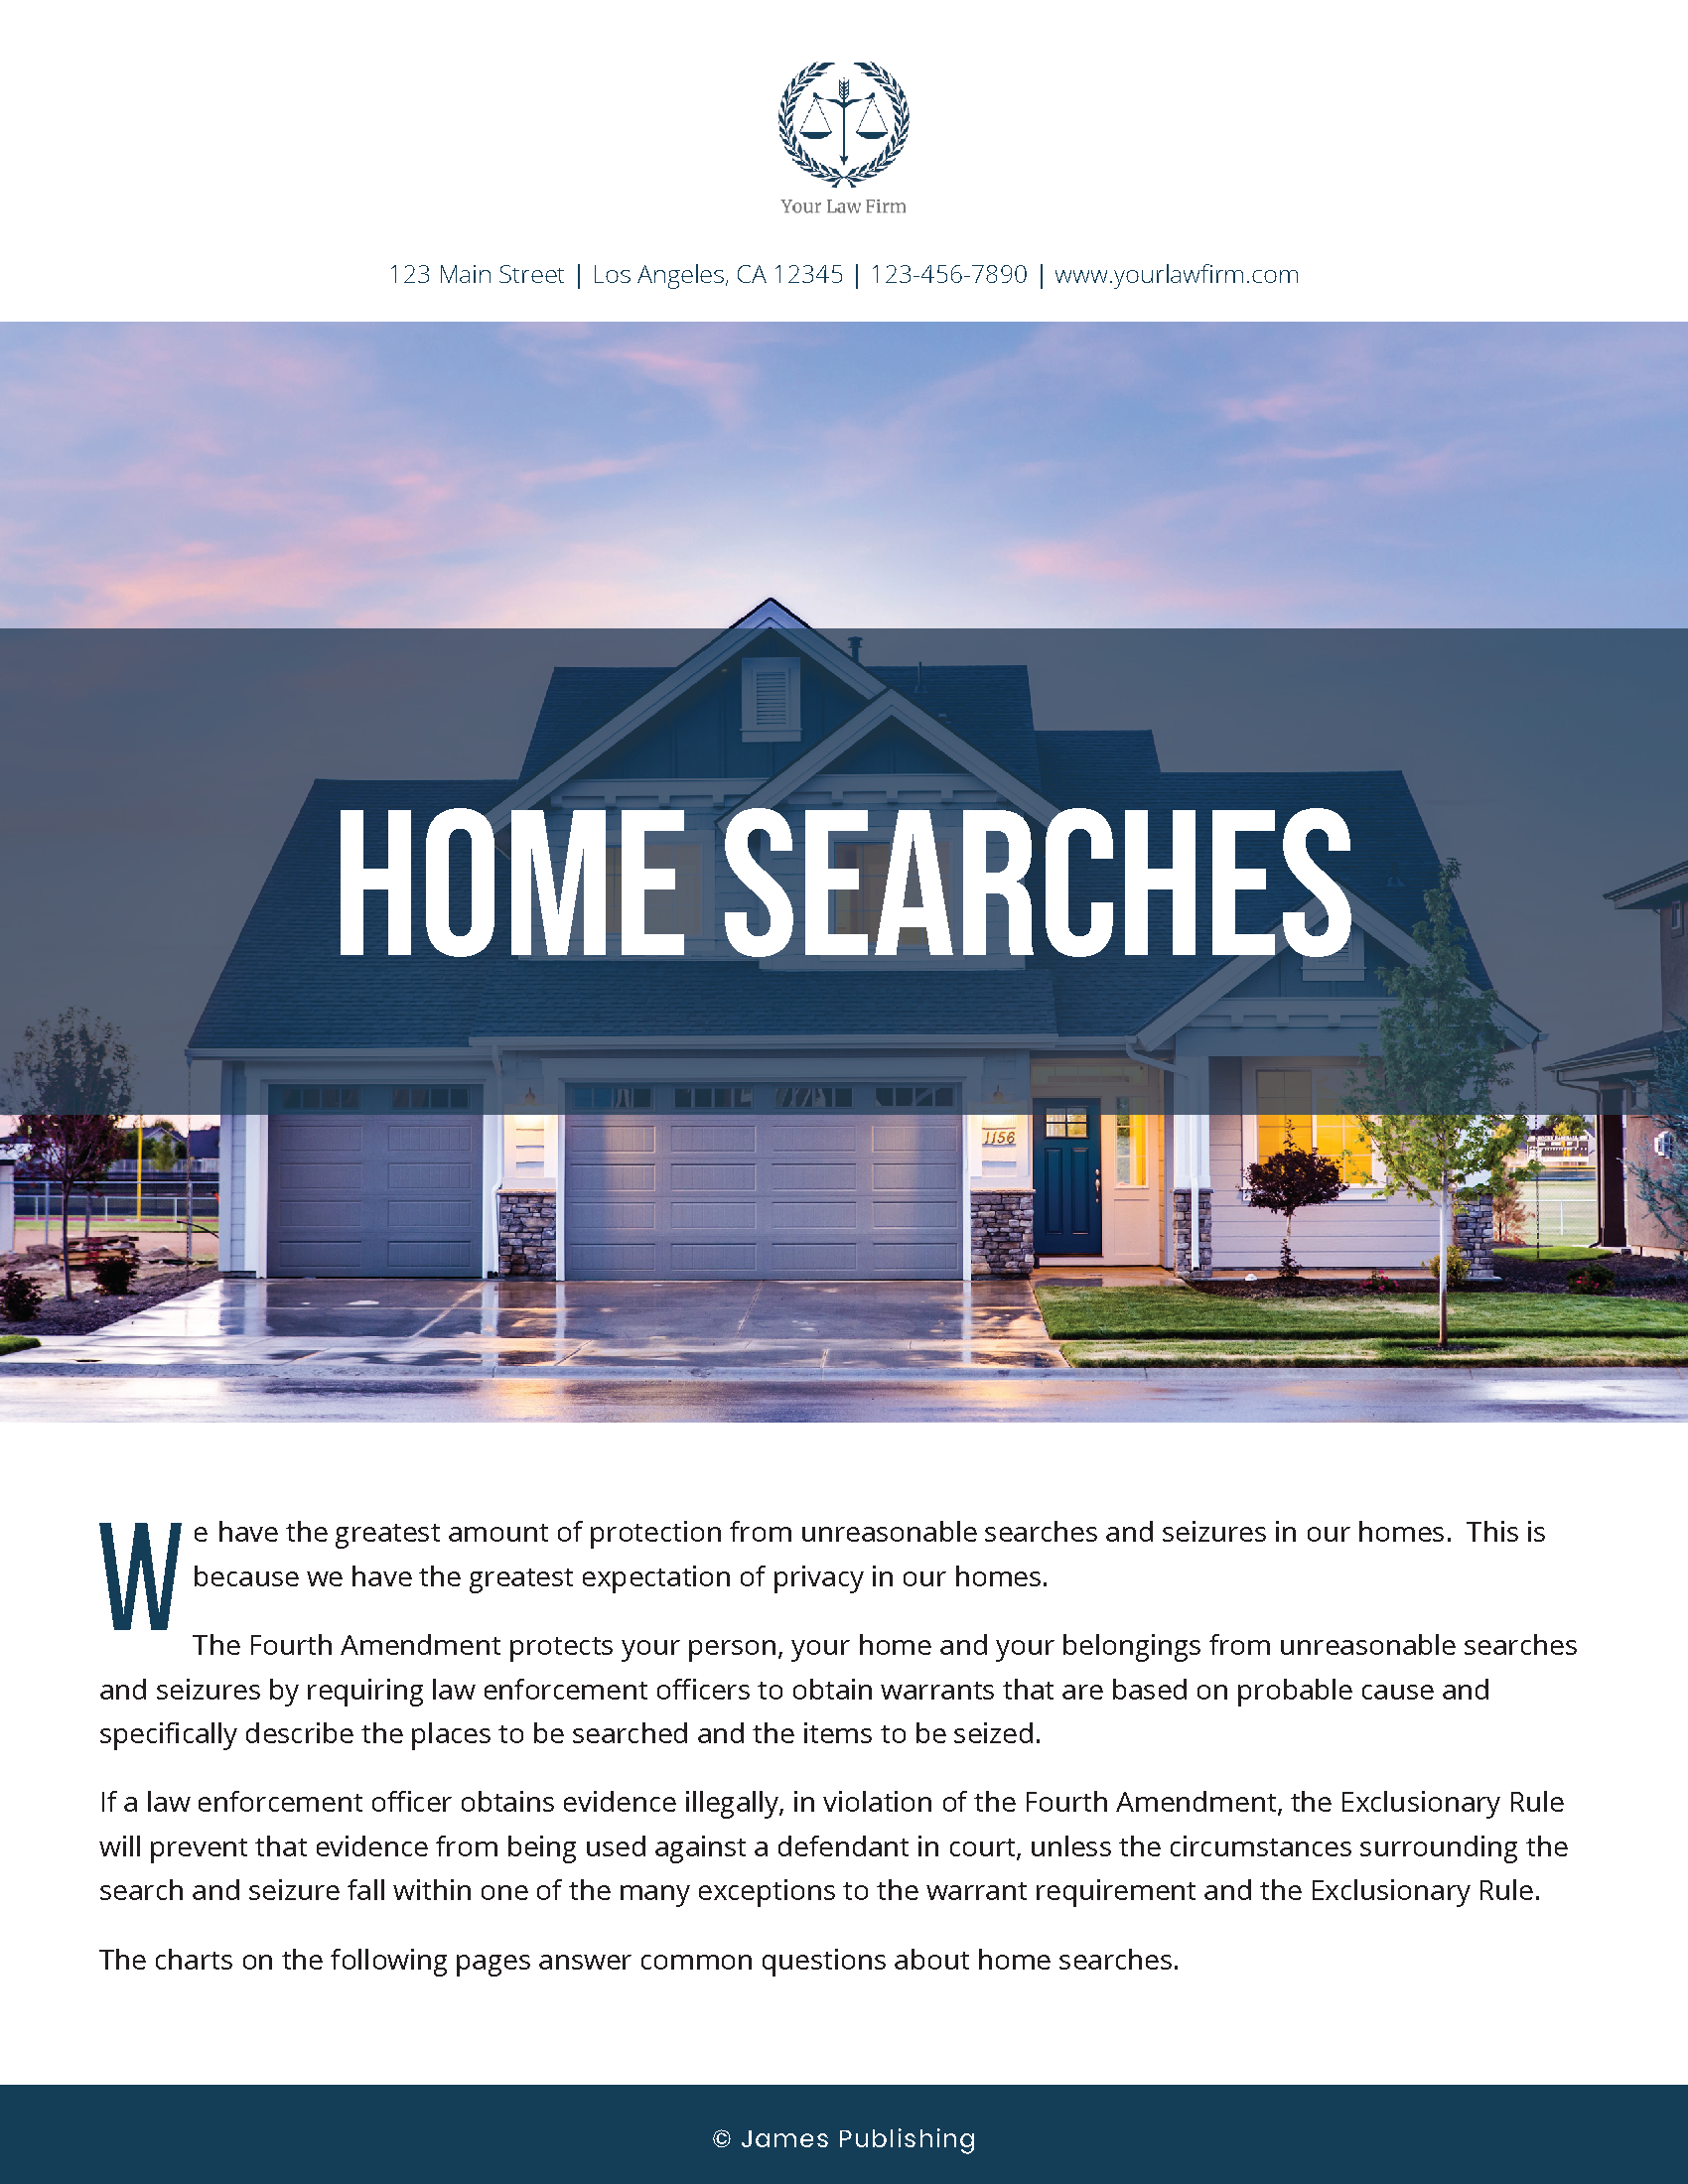 CRIM-19 Flowchart - Home Searches